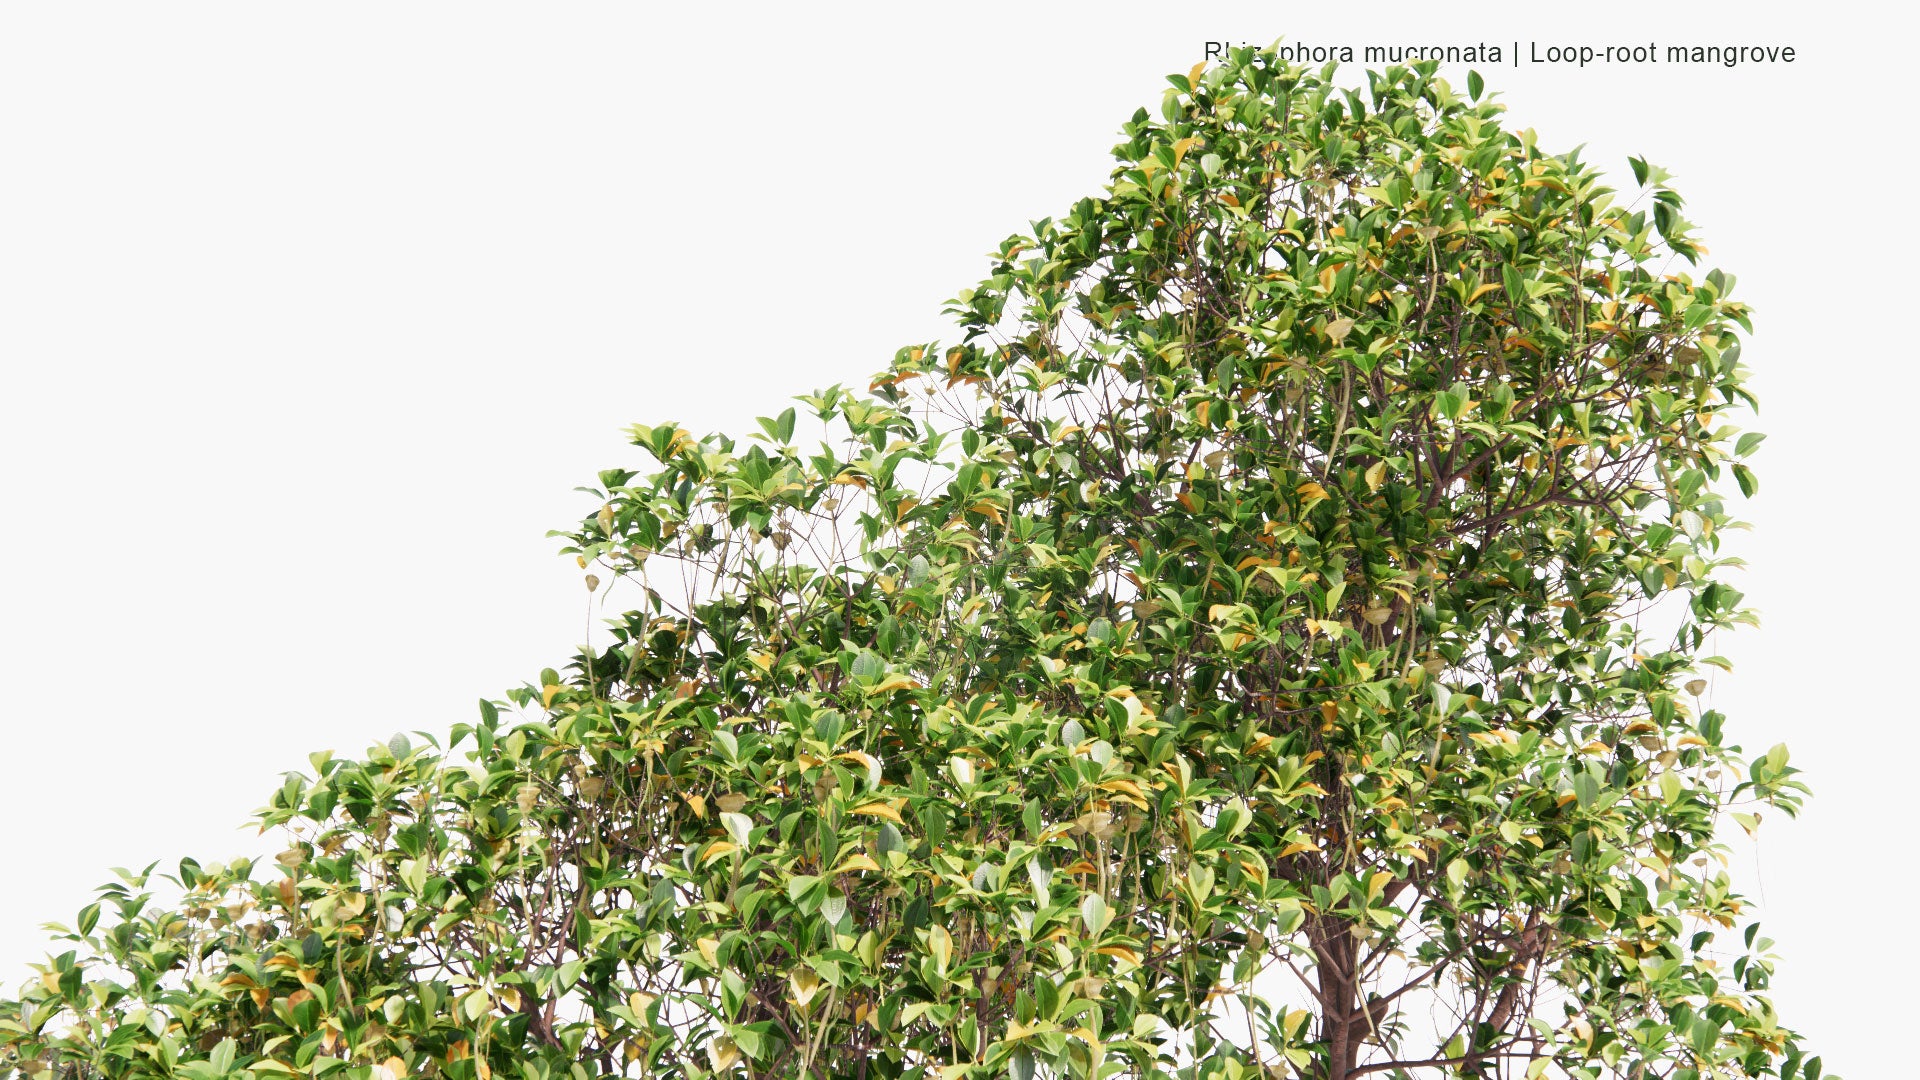 Low Poly Rhizophora Mucronata - Loop-Root Mangrove, Red Mangrove, Asiatic Mangrove (3D Model)